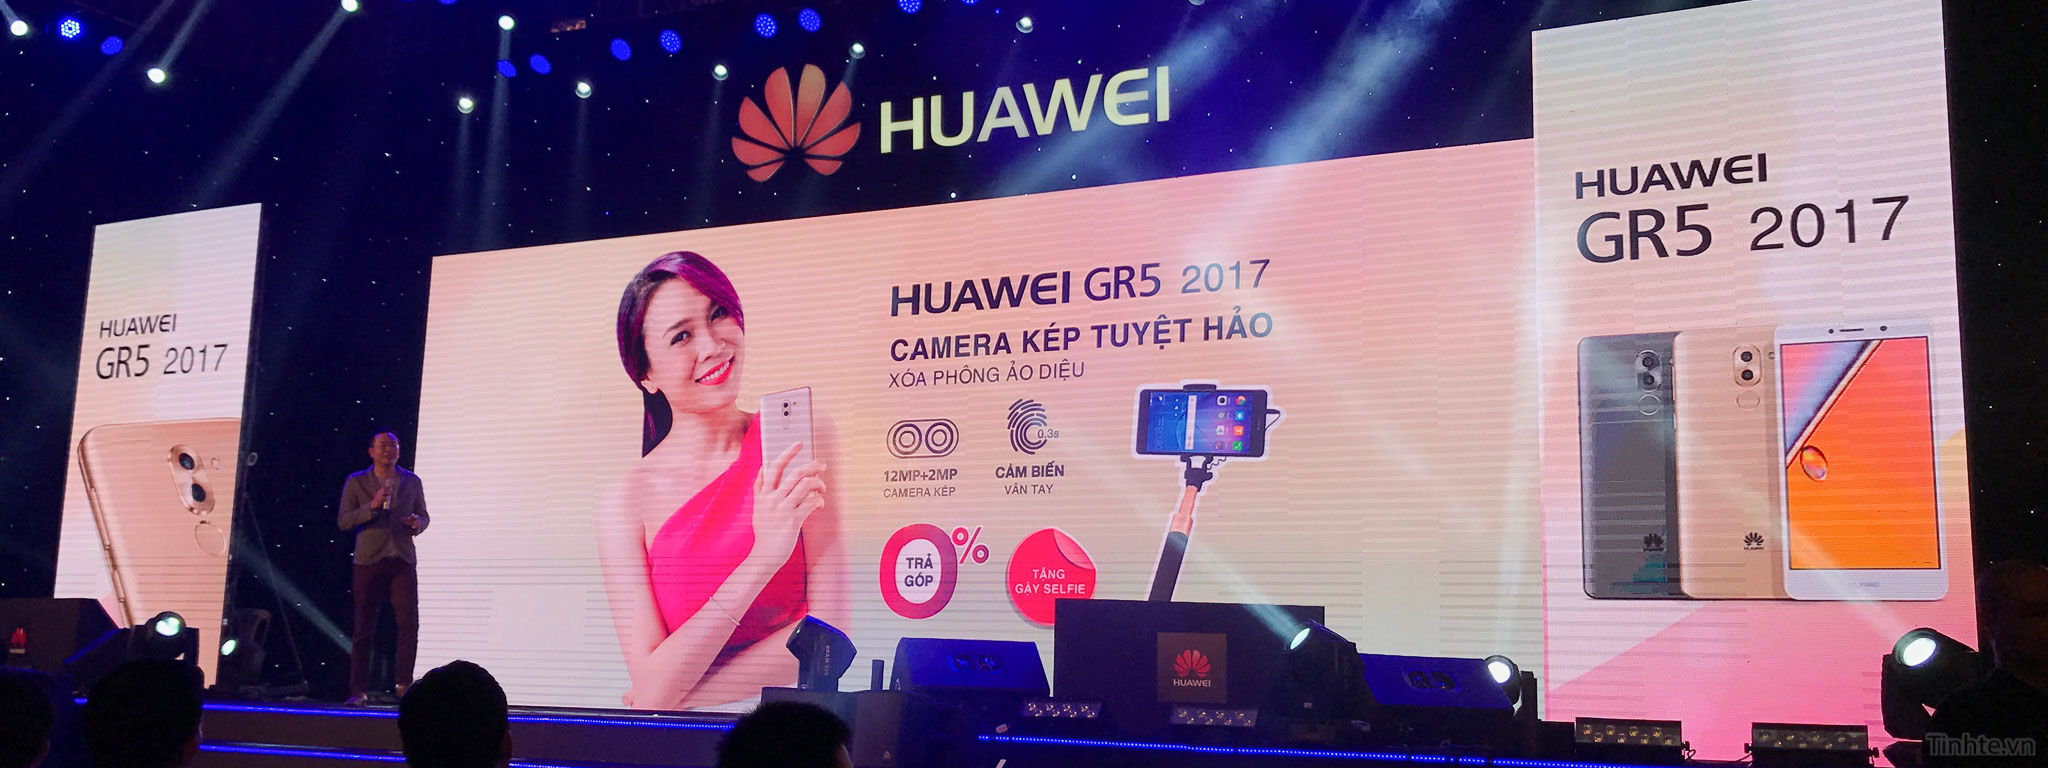 Huawei_GR5_2017_chinh_hang_tinhte.vn-12.jpg